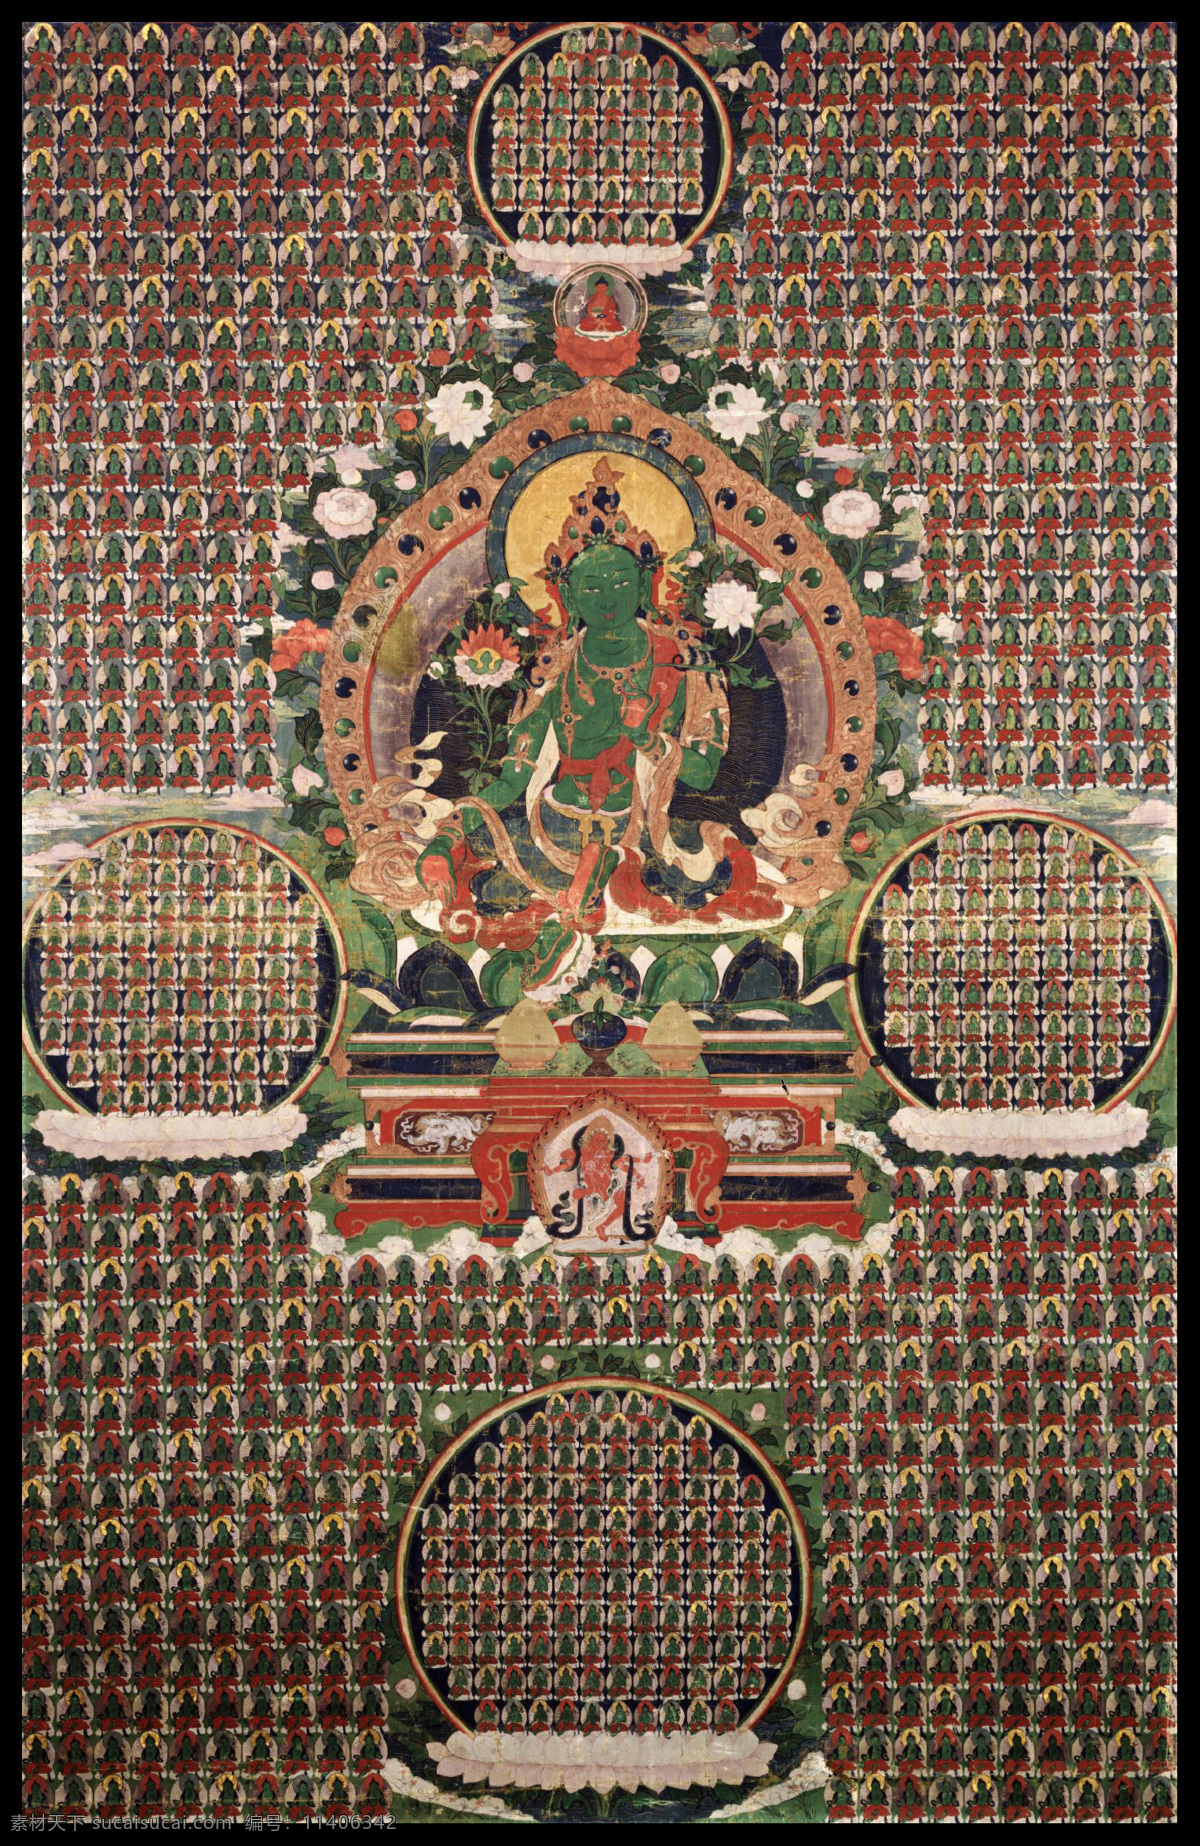 绿度母 唐卡 老唐卡 传承 西藏 藏传 佛教 密宗 法器 佛 菩萨 成就 成就者 大德 喇嘛 活佛 宗教信仰 文化艺术